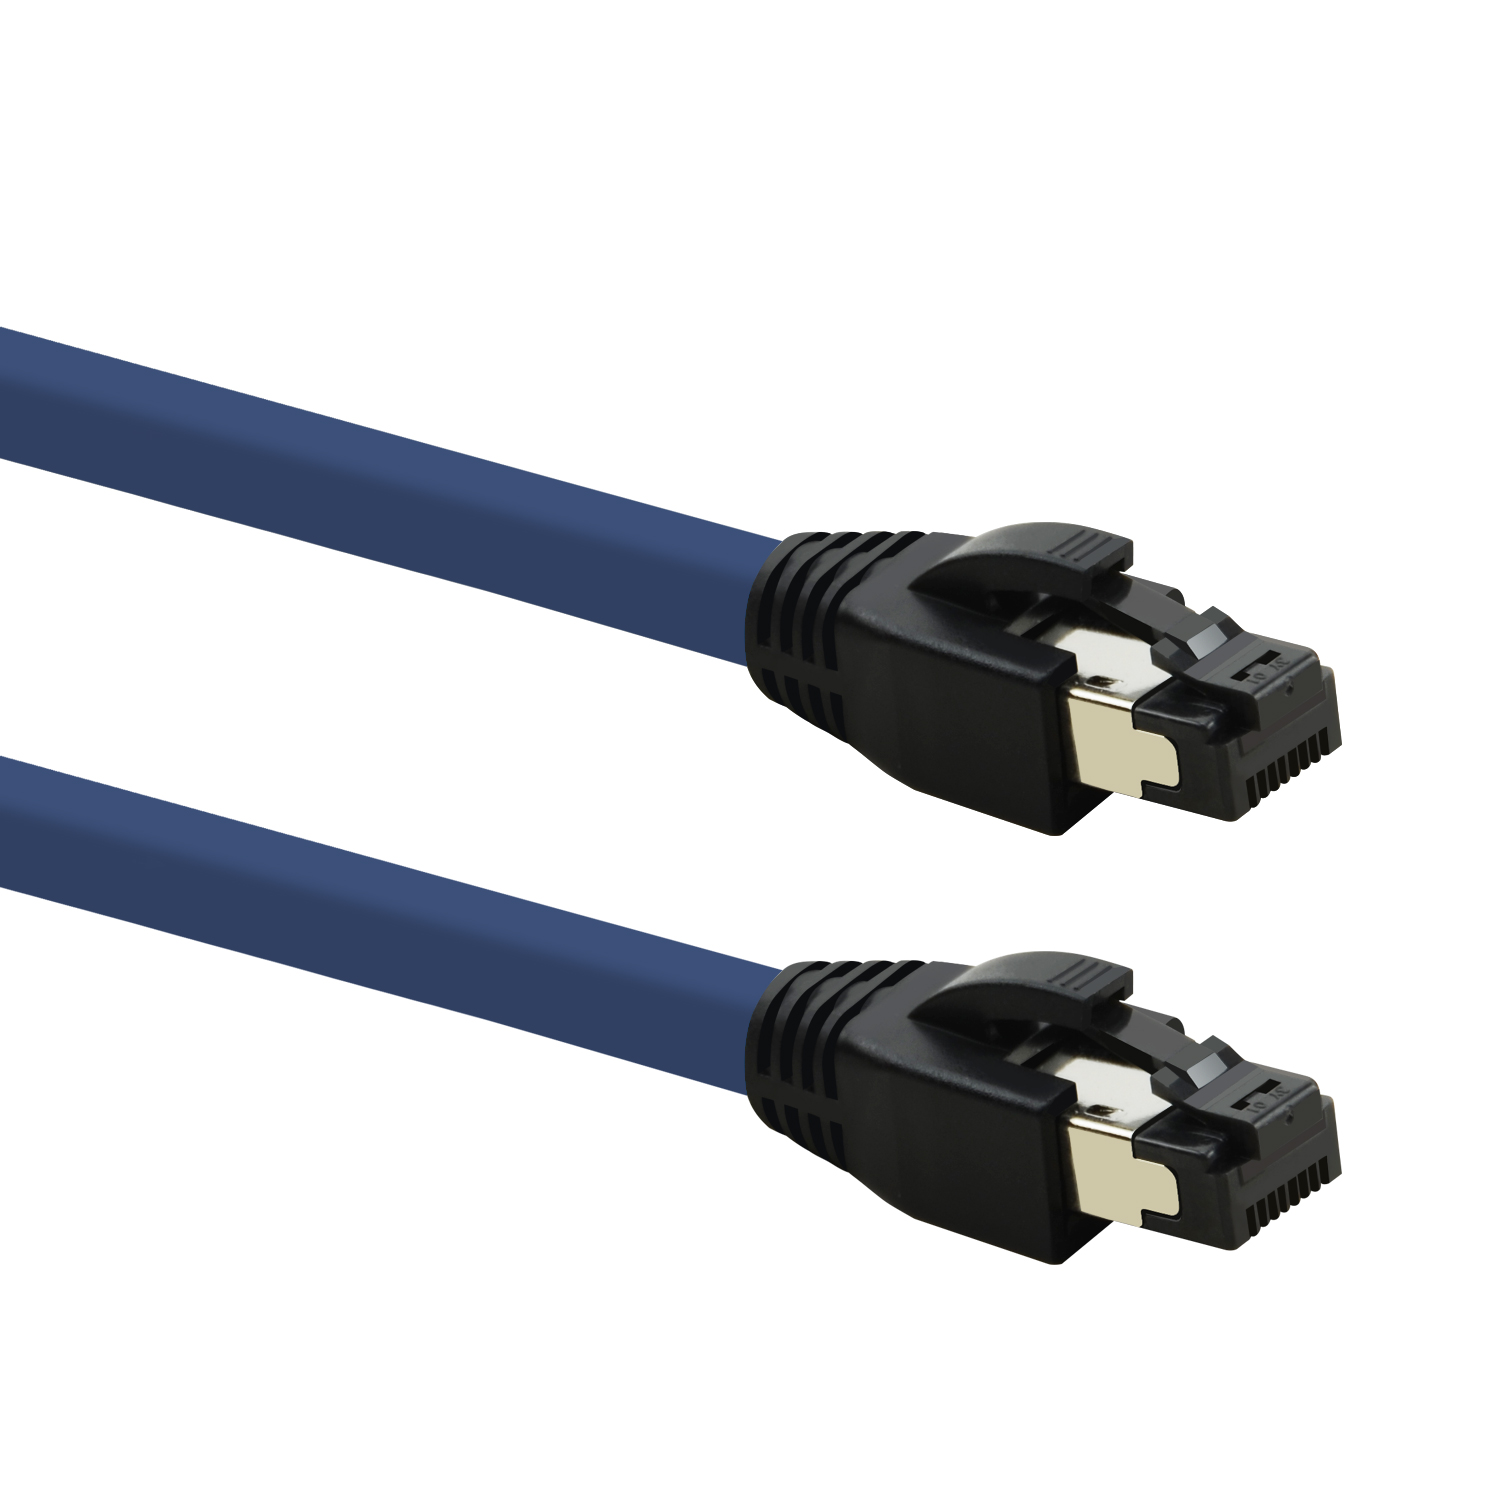 Netzwerkkabel, TPFNET S/FTP 40 blau, 1,5m / 1,5 m Patchkabel Netzwerkkabel GBit,